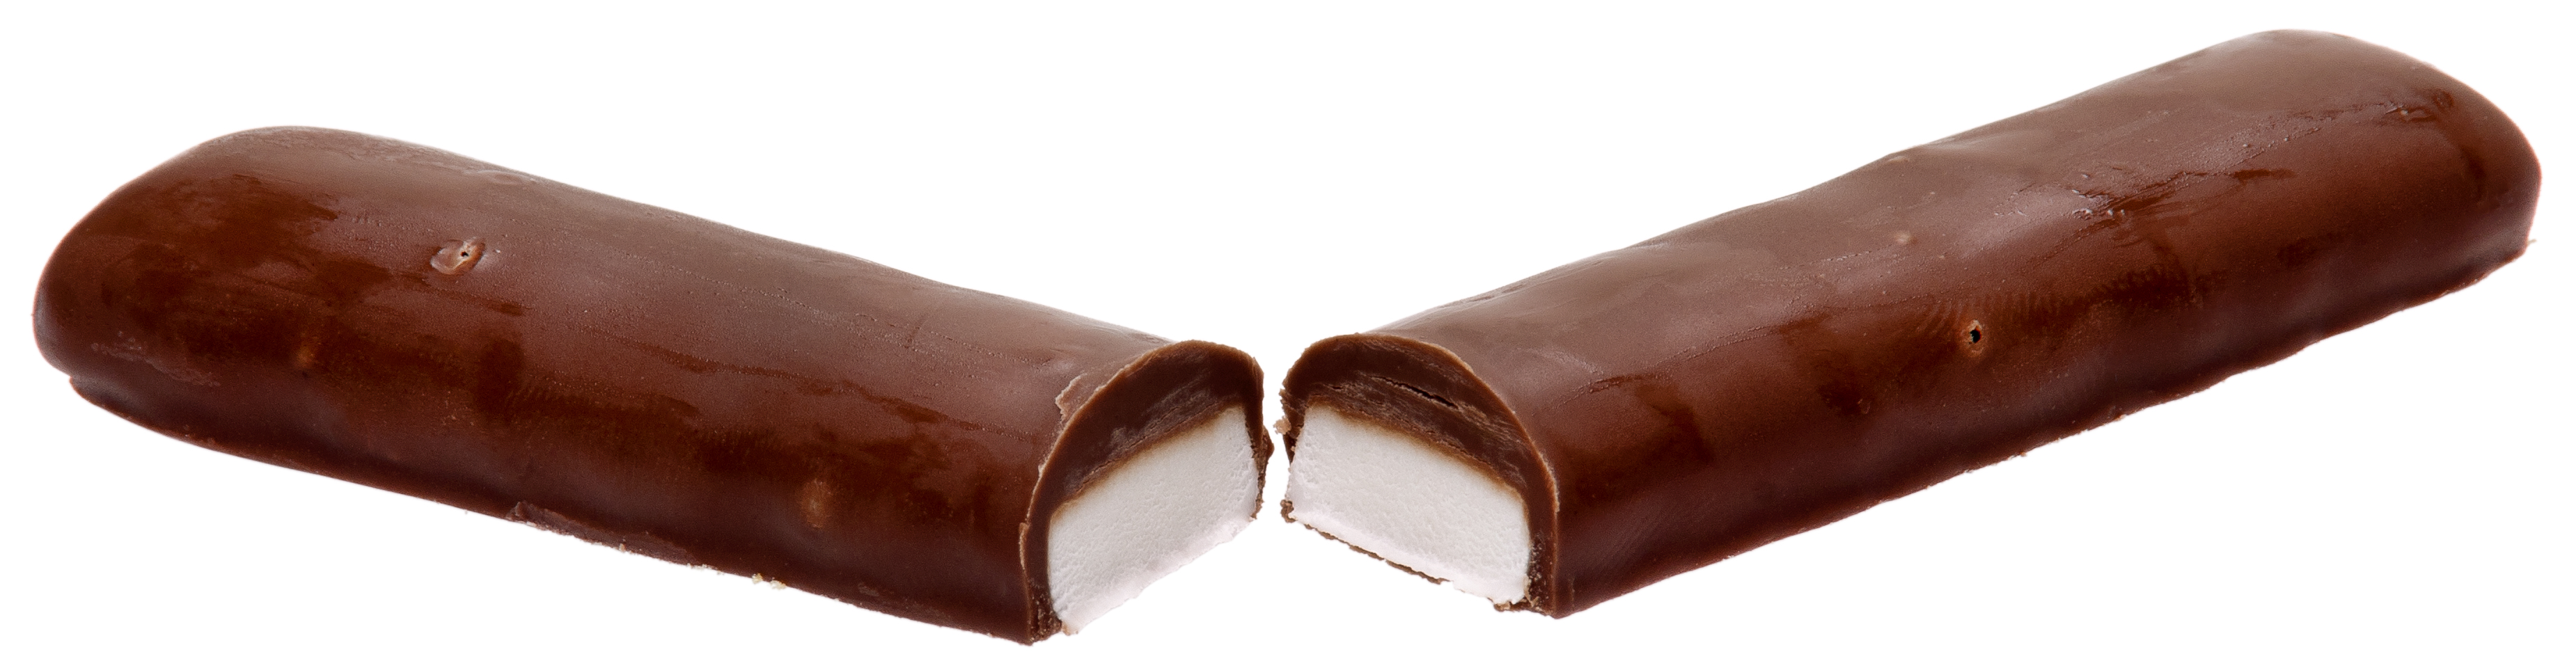  चॉकलेट विभाजित करें, विभक्त करें In Half